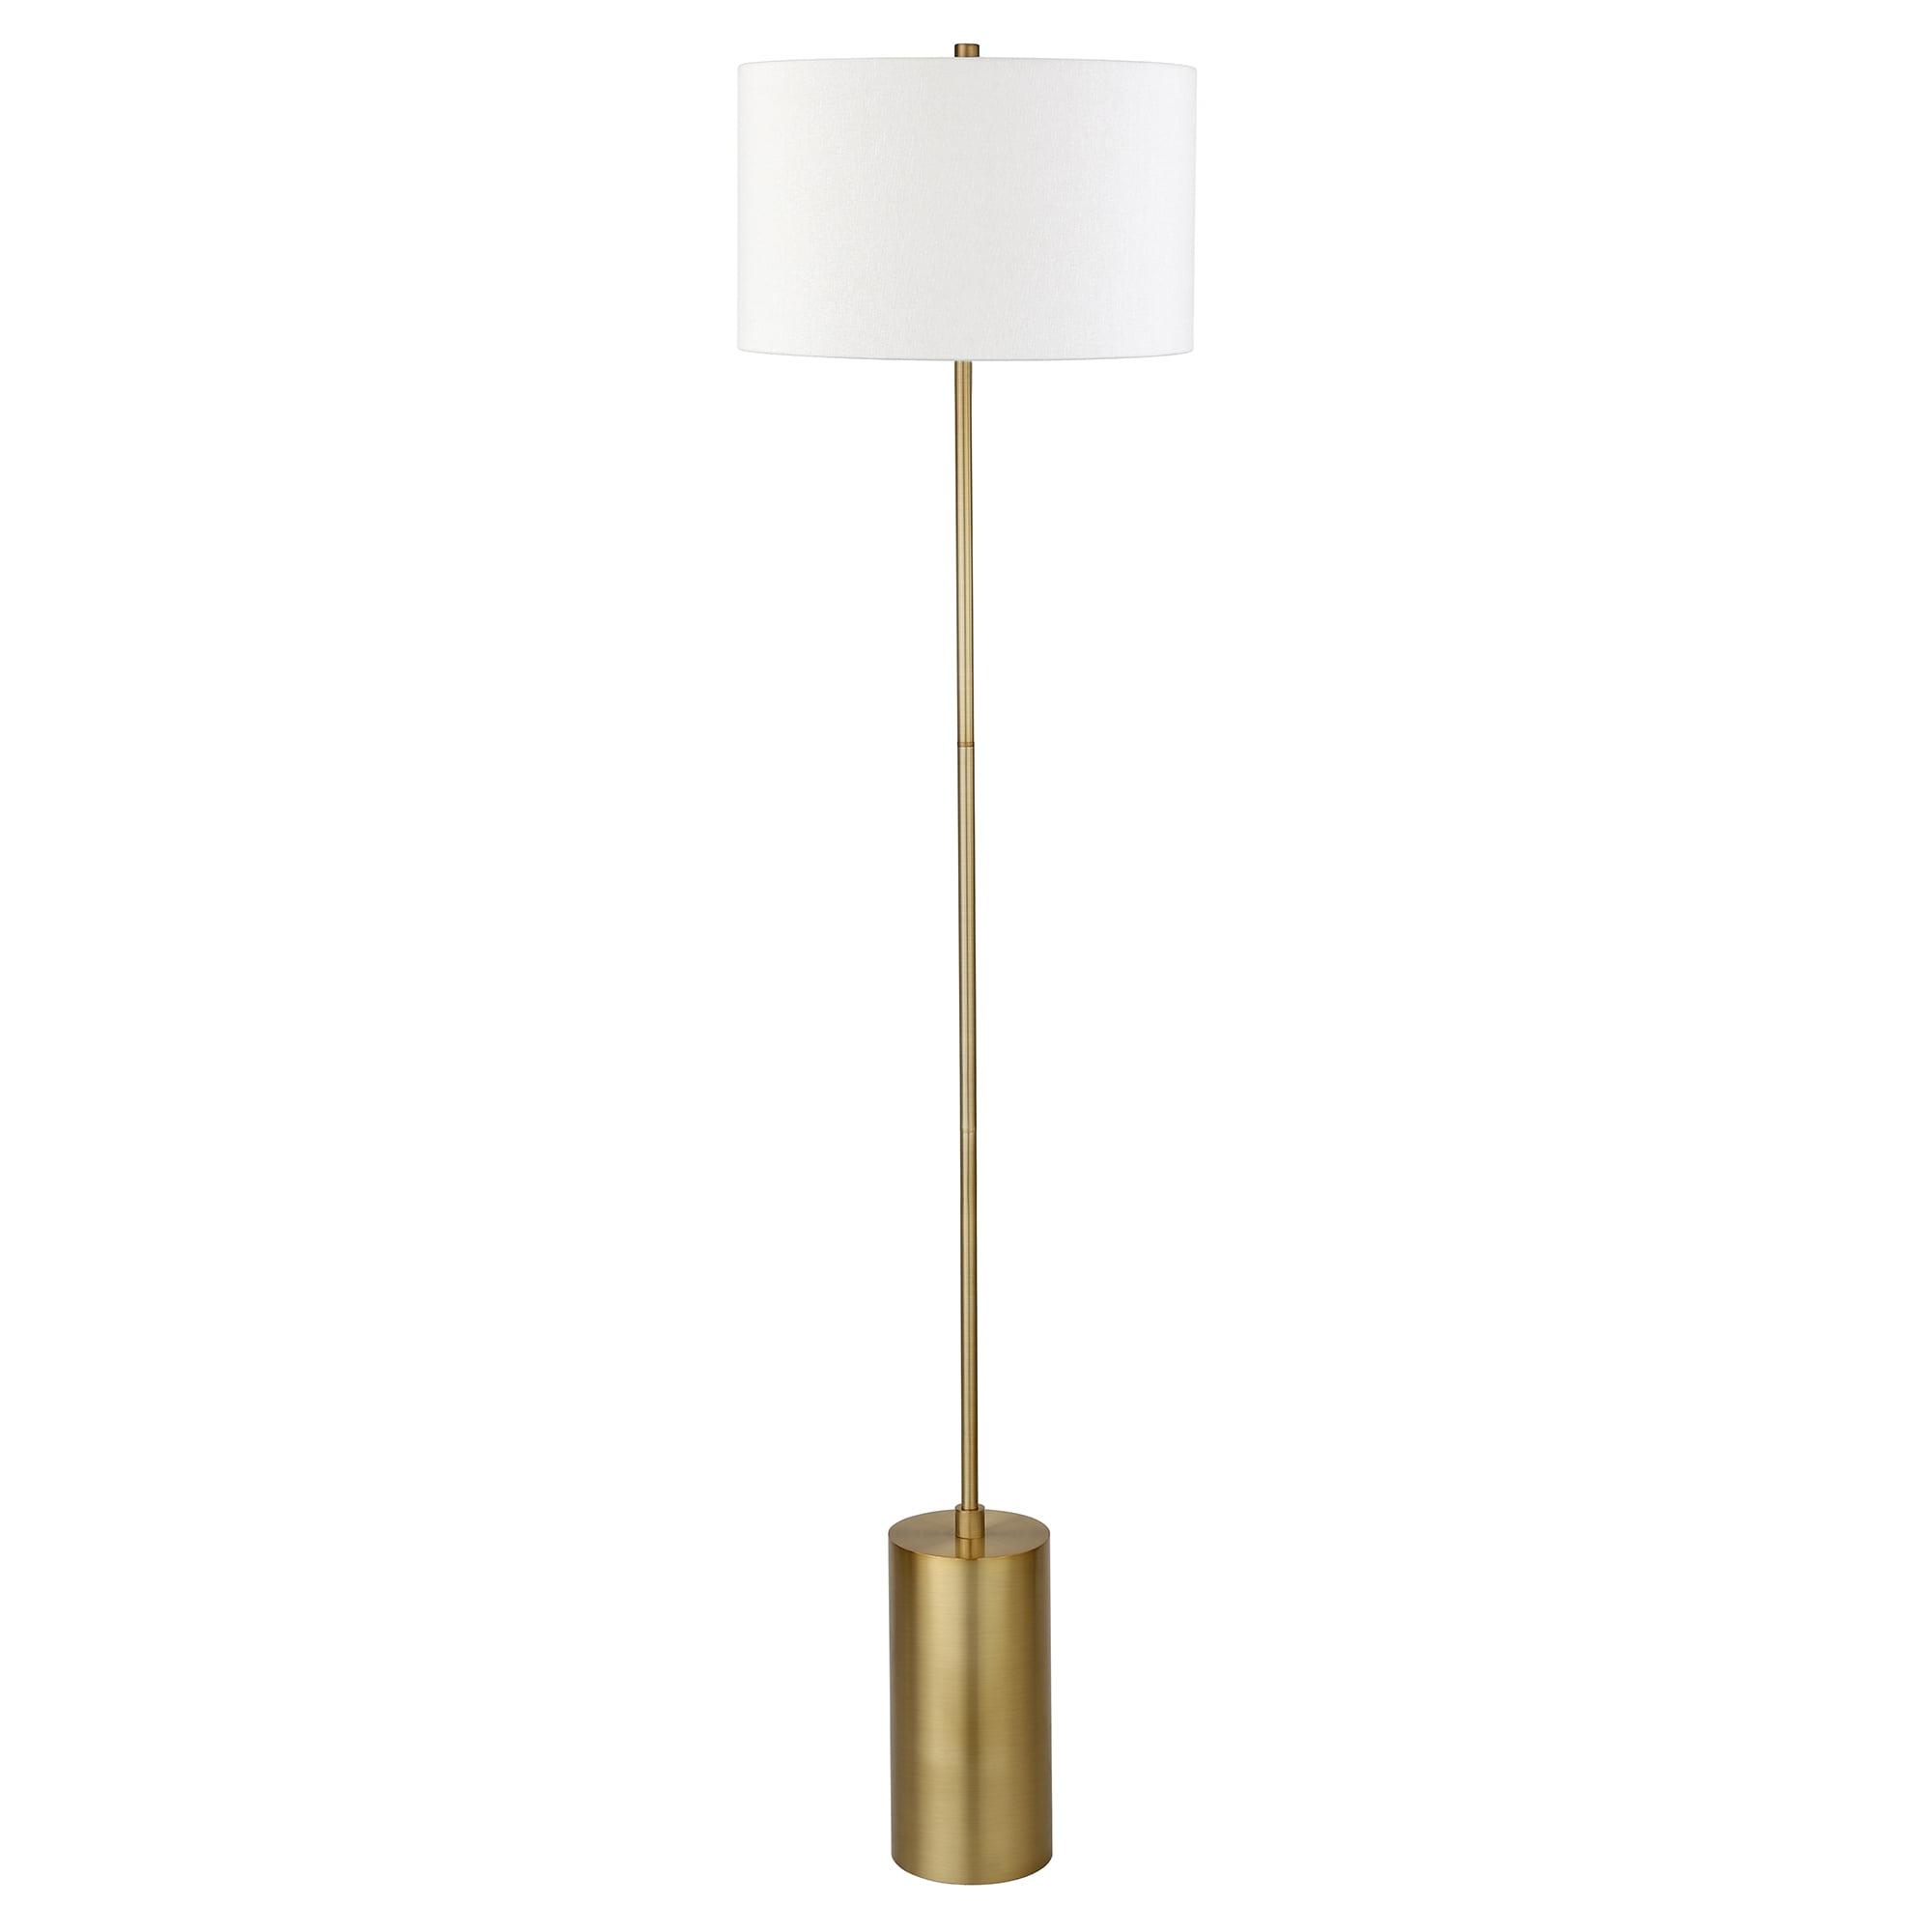 Adjustable Bronze 64" Floor Lamp with Linen Shade